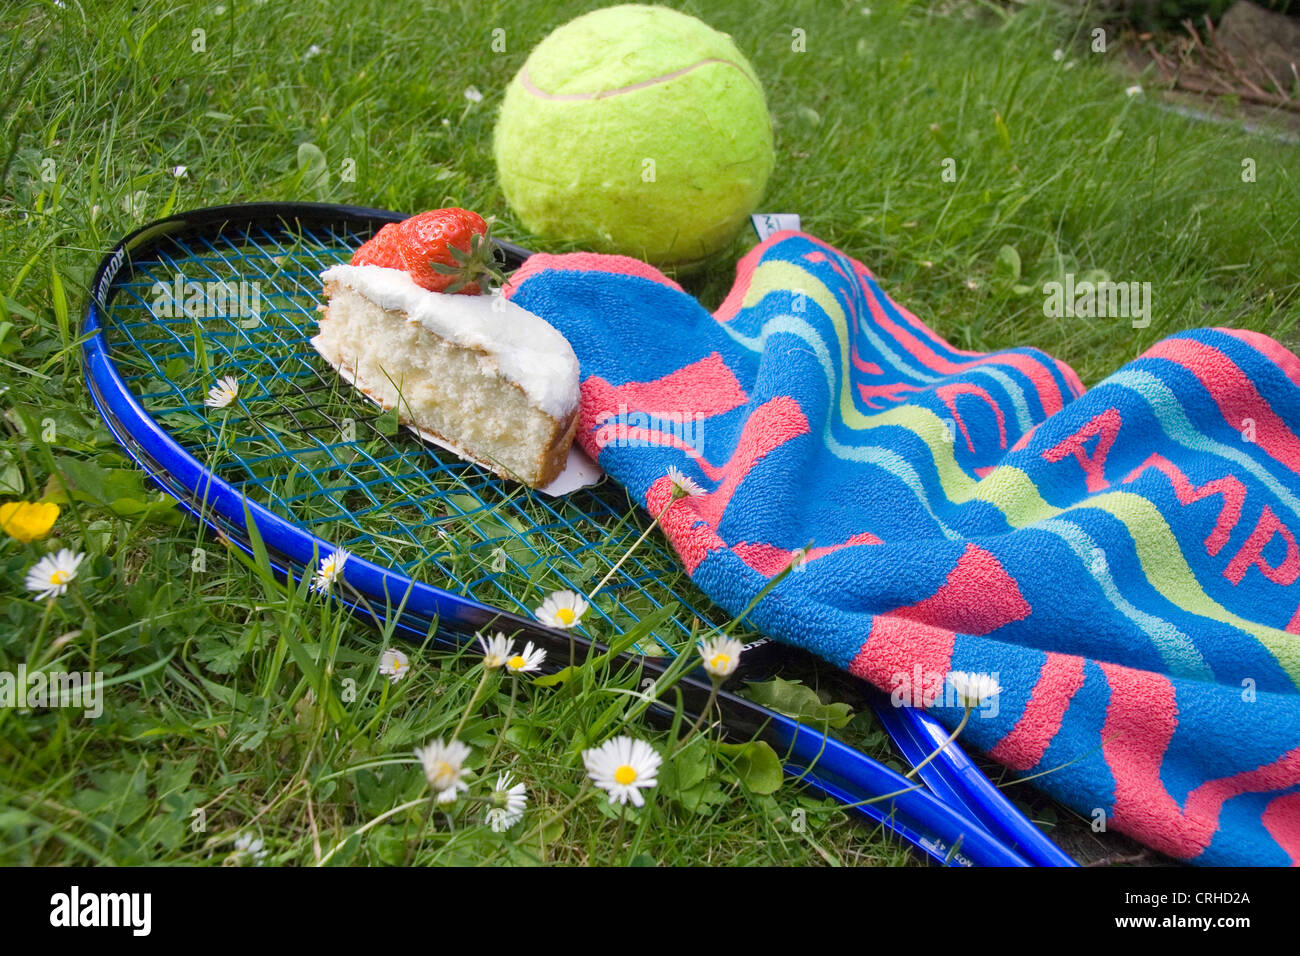 Raquette de tennis et balle sur l'herbe montrant des espoirs déçus Banque D'Images